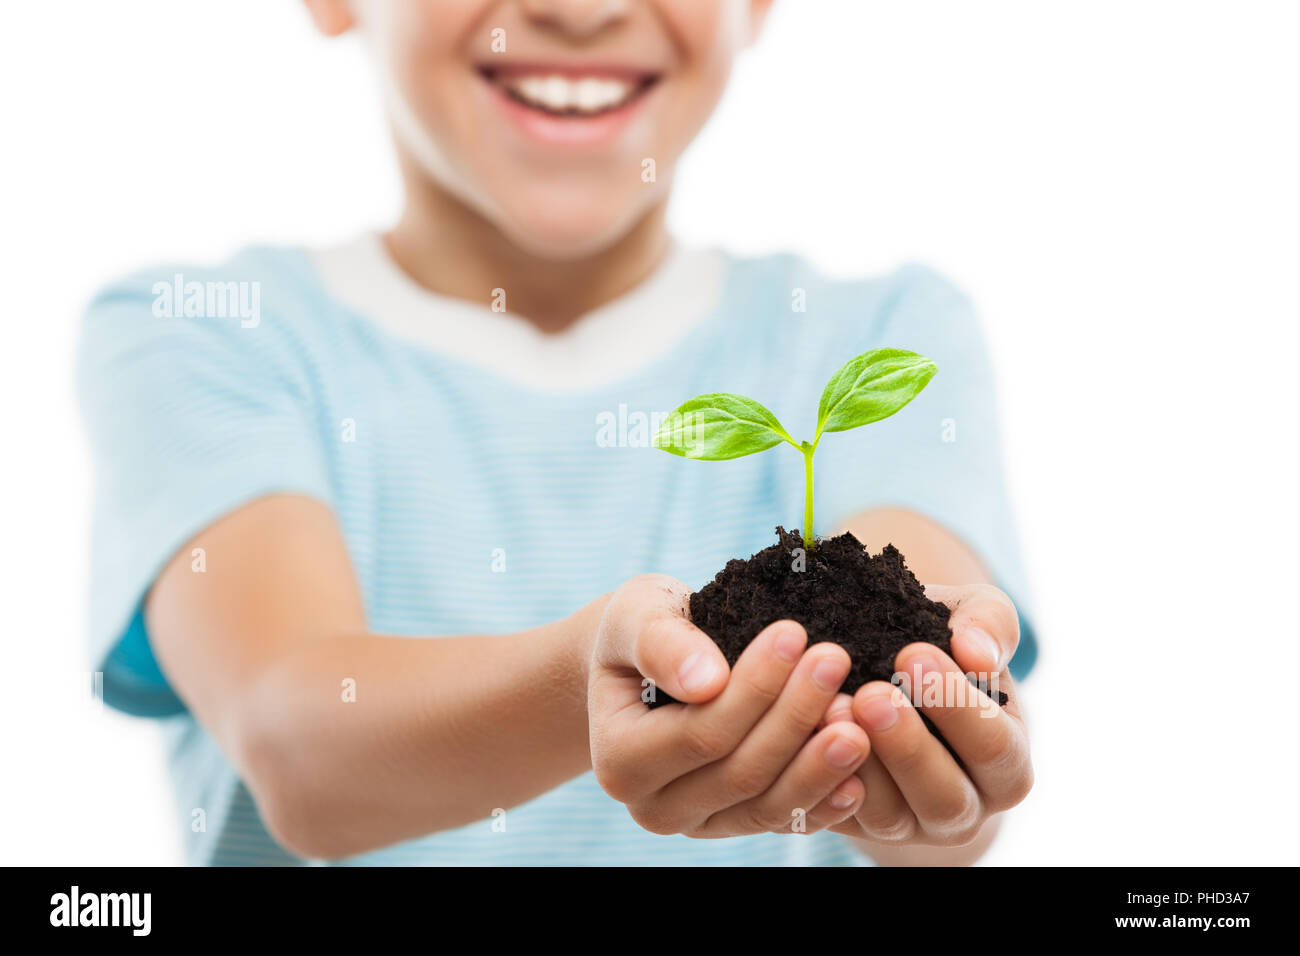 Stattliche lächelndes Kind Junge holding Boden wachsenden Grün sprießen Blatt Stockfoto